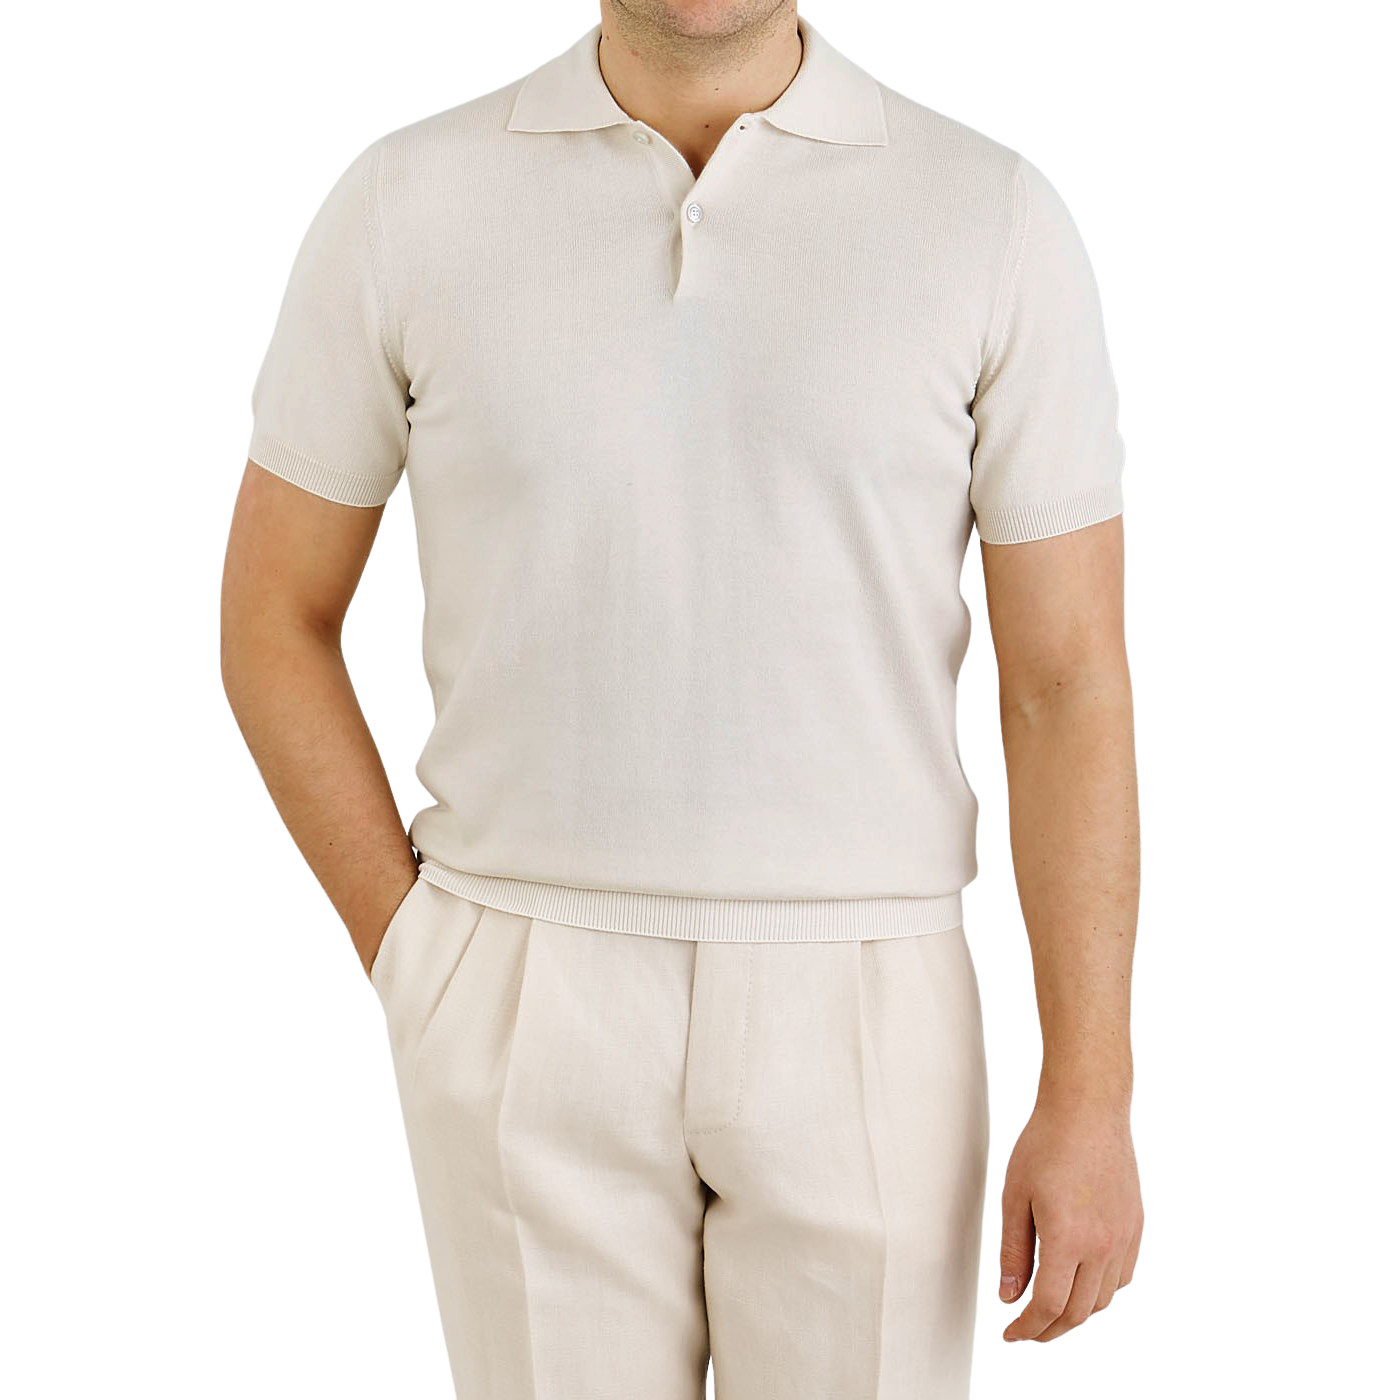 Mauro Ottaviani - Light Beige Supima Cotton Polo Shirt | Baltzar